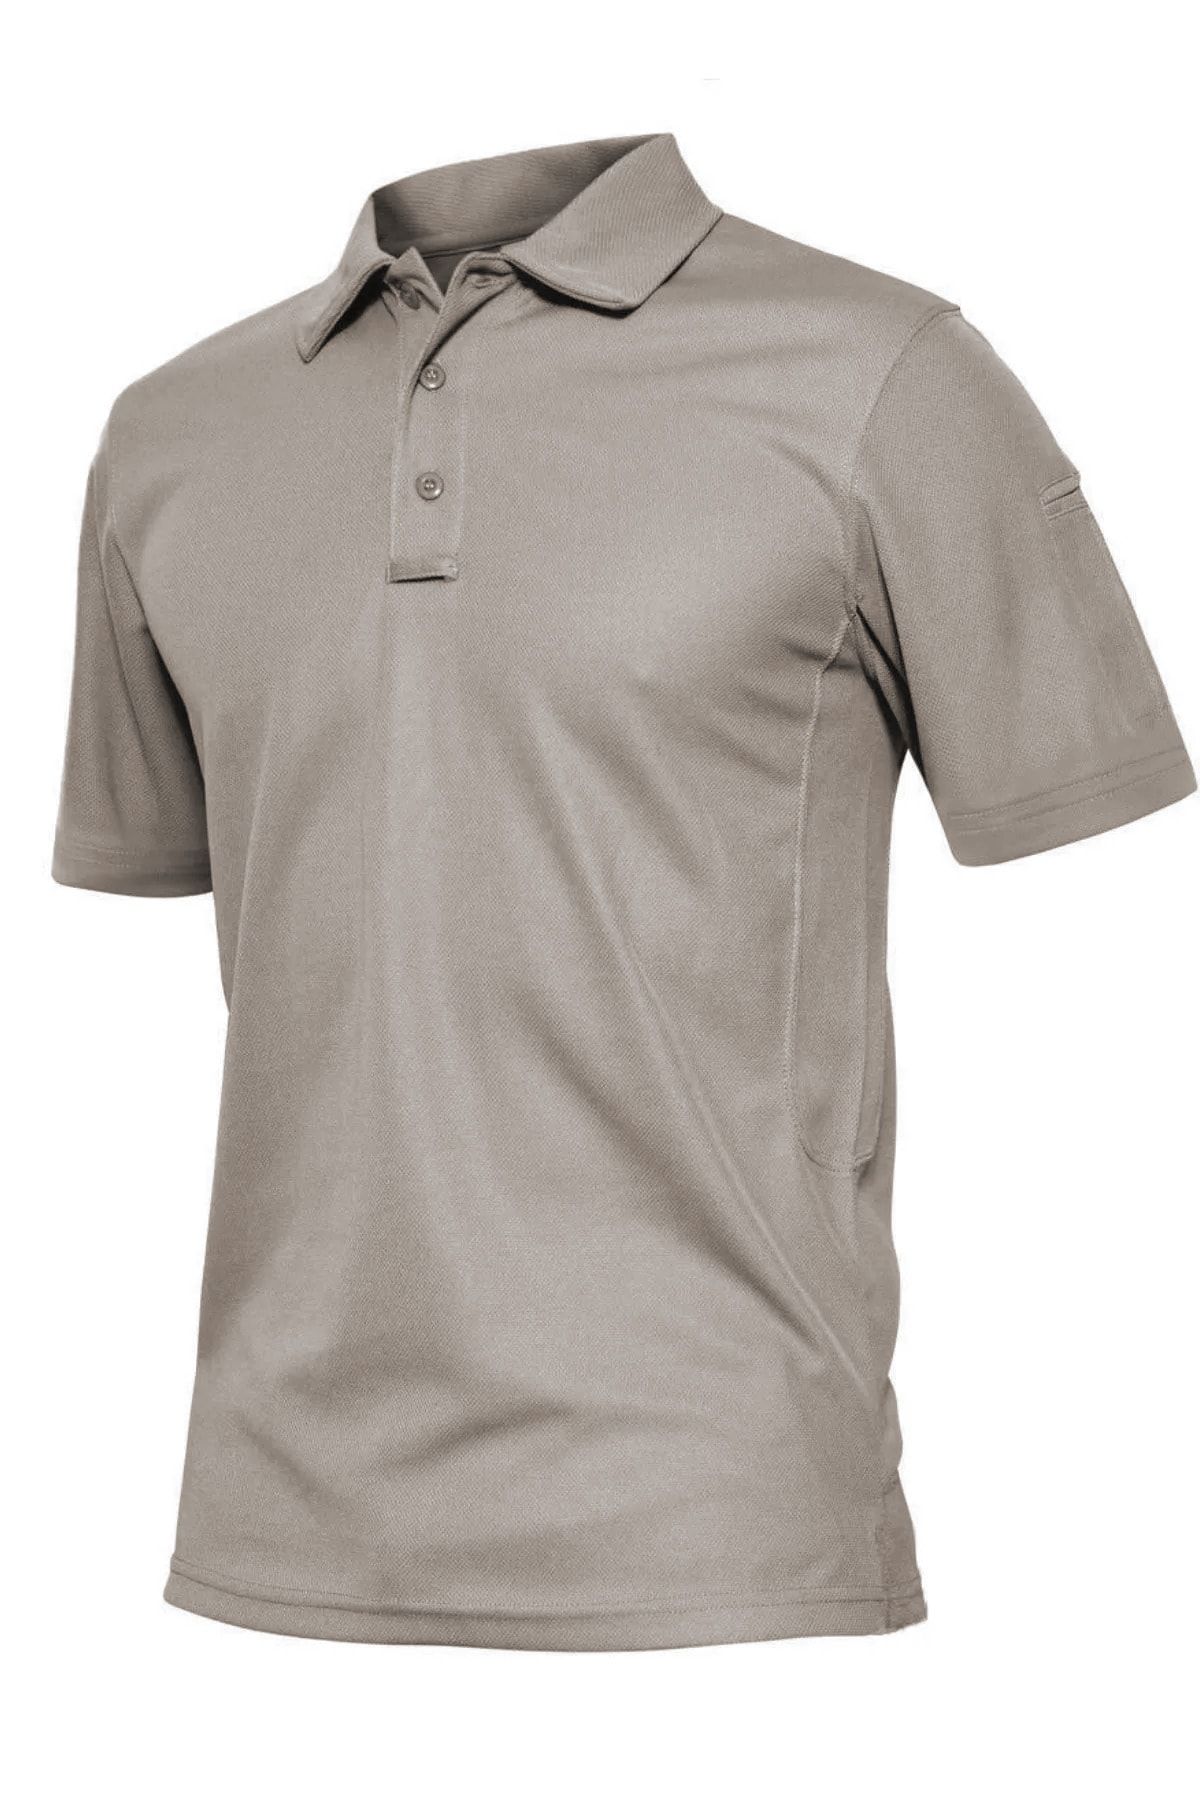 Ghassy Co Erkek Taktik Polo Yaka Gömlek Hızlı Kuruma Nem Emici Performans Pique Jersey Golf T-shirt